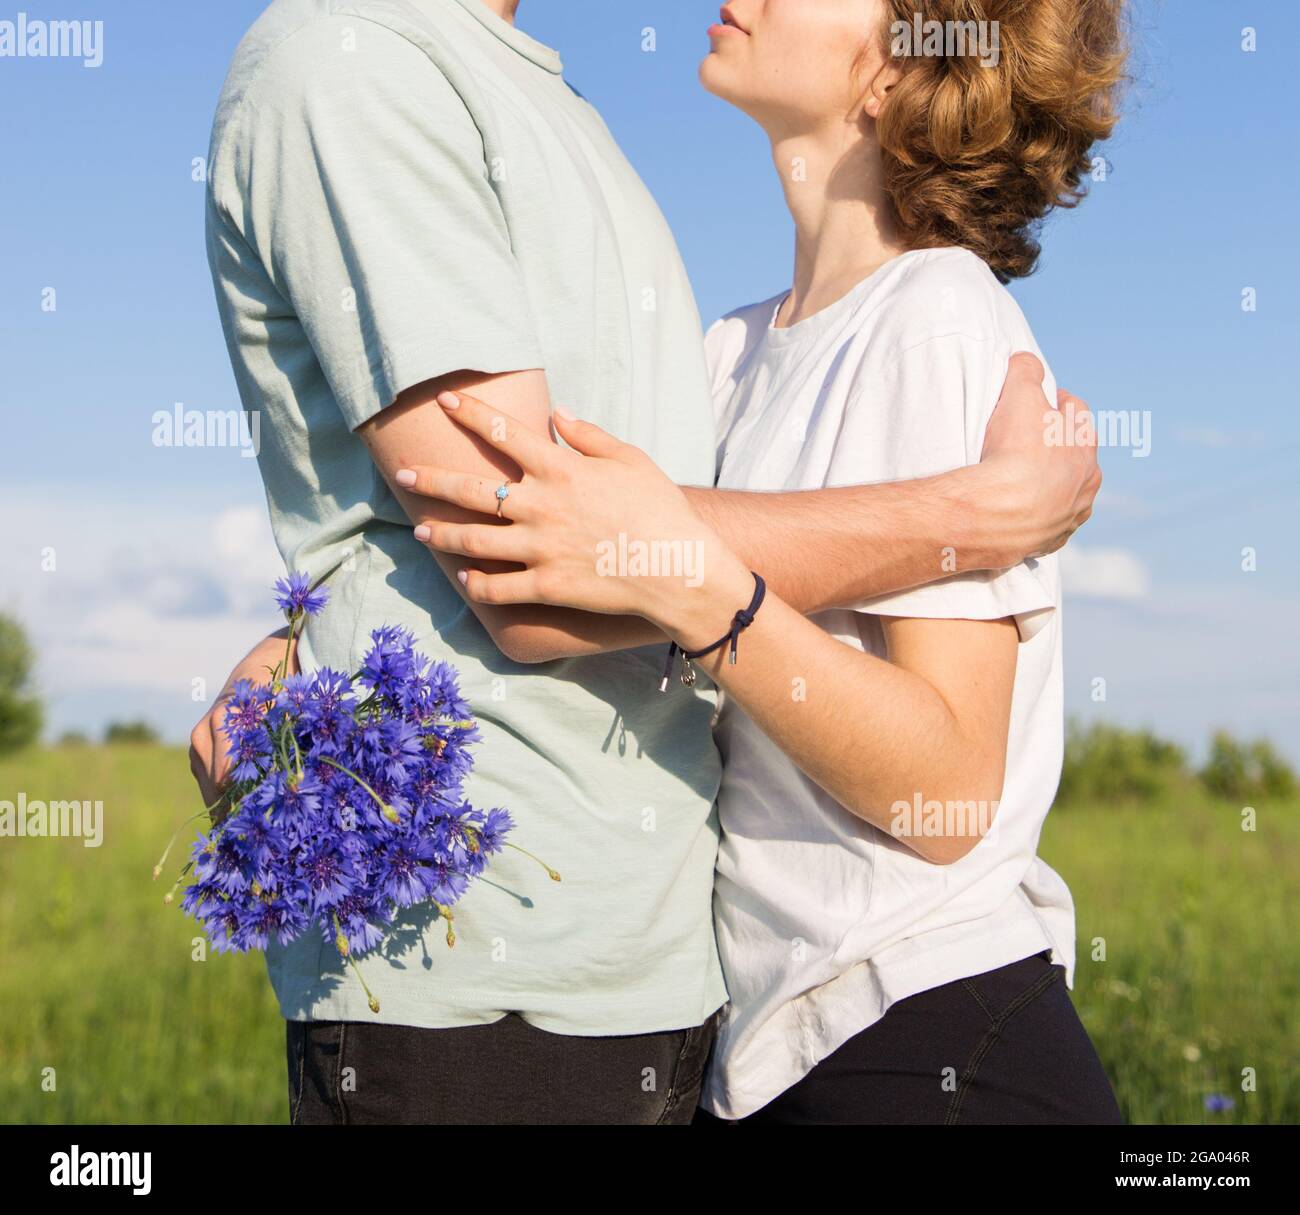 Unbekanntes junges Paar in der Liebe, Ruhe und Umarmung in der Natur an einem sonnigen Tag. Kleiner Junge und Mädchen mit einem Strauß Kornblumen. Zarte Gefühle, Romantik Stockfoto